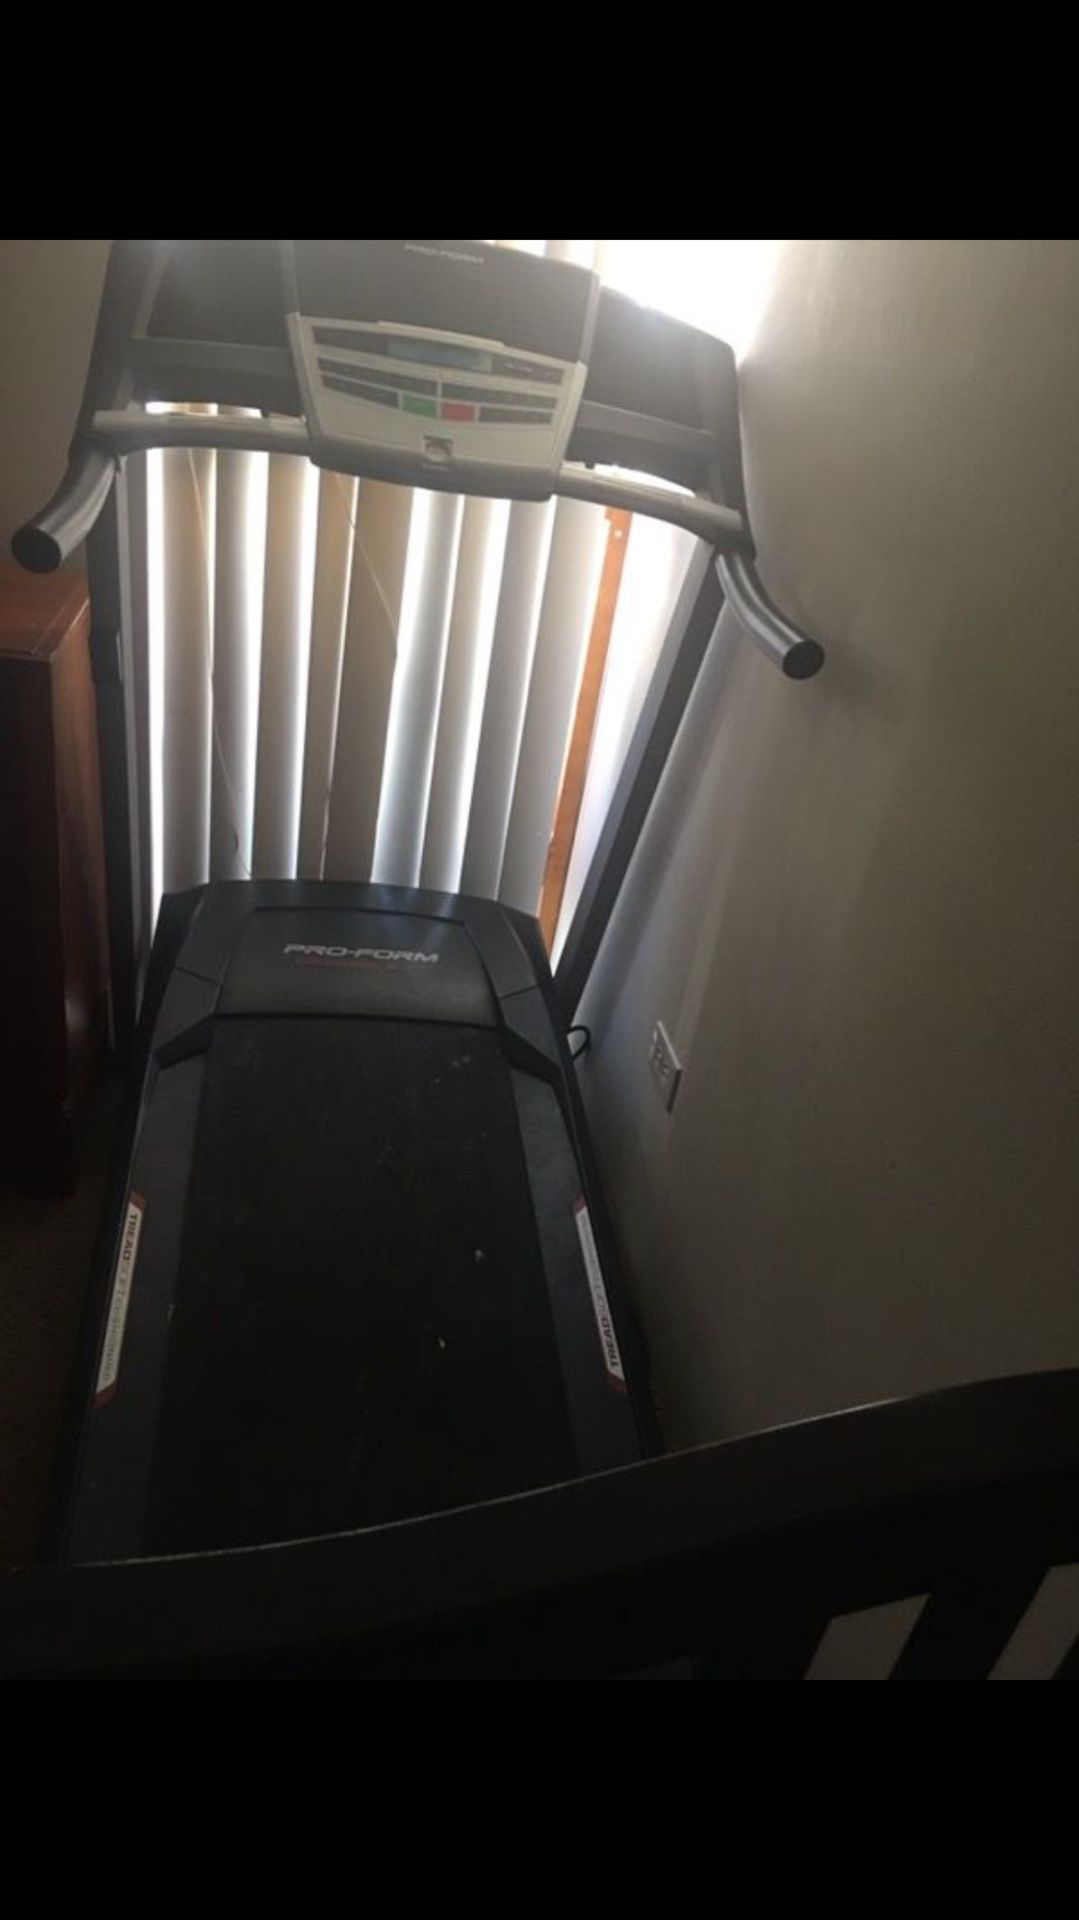 proform crosswalk 395 treadmill